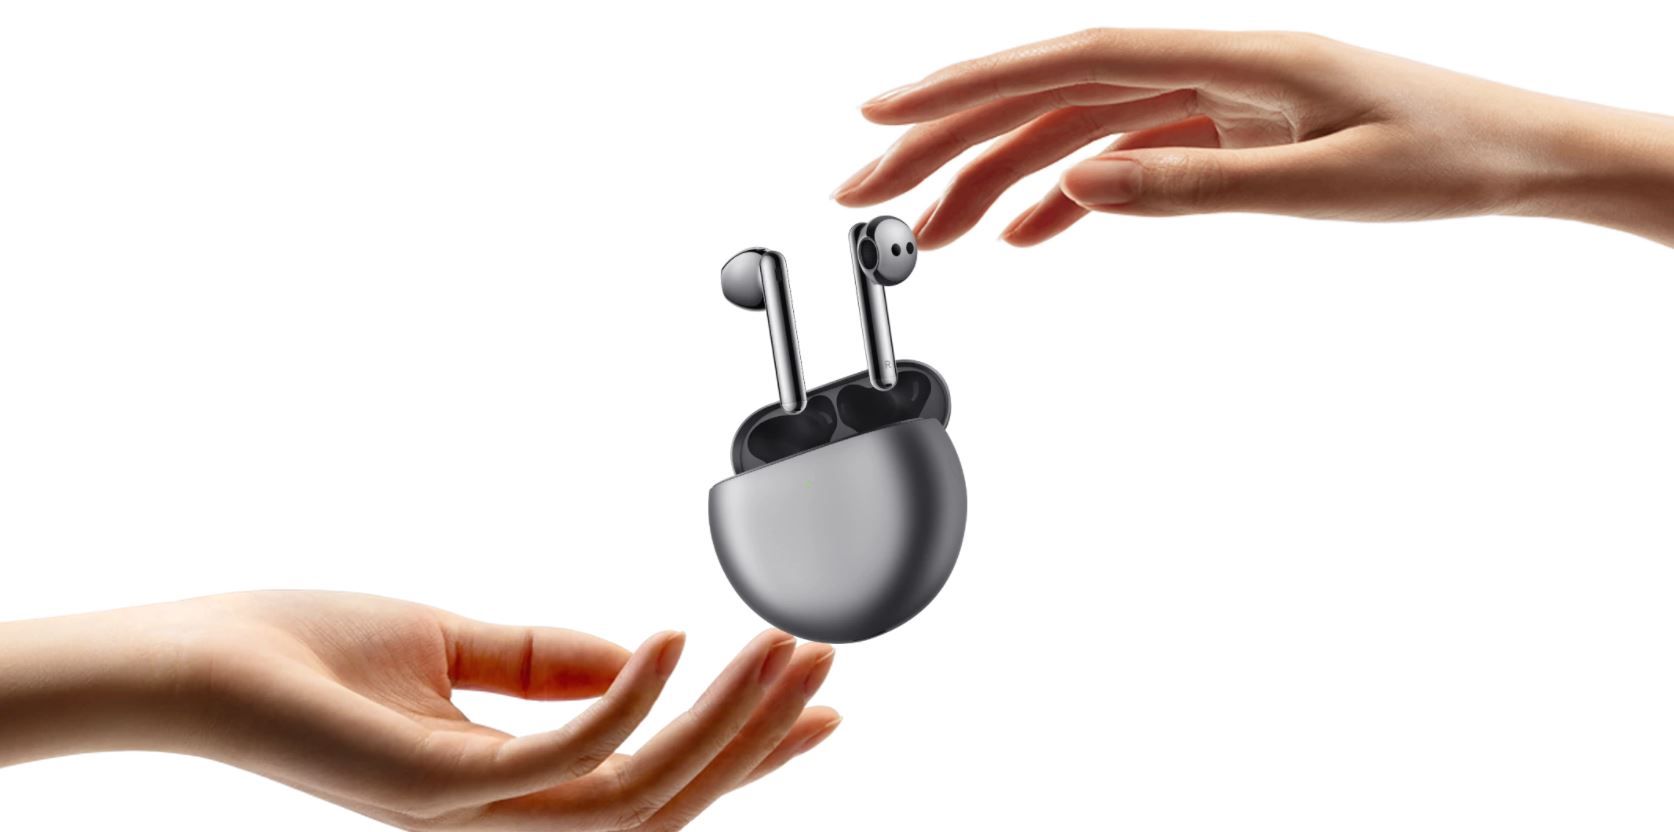  krásne prenosné slúchadlá huawei freebuds 4 nabíjací box Bluetooth anc aktívne potlačenie hlukov ipx4 odolnosť voči vode mikrofón špičkový zvuk výkonné meniče štýlový dizajn pohodlné v ušiach ergonomicky tvarované ľahučké prevedenie kôstky do uší podpora hlasových asistentov ovládanie mobilnou aplikáciou